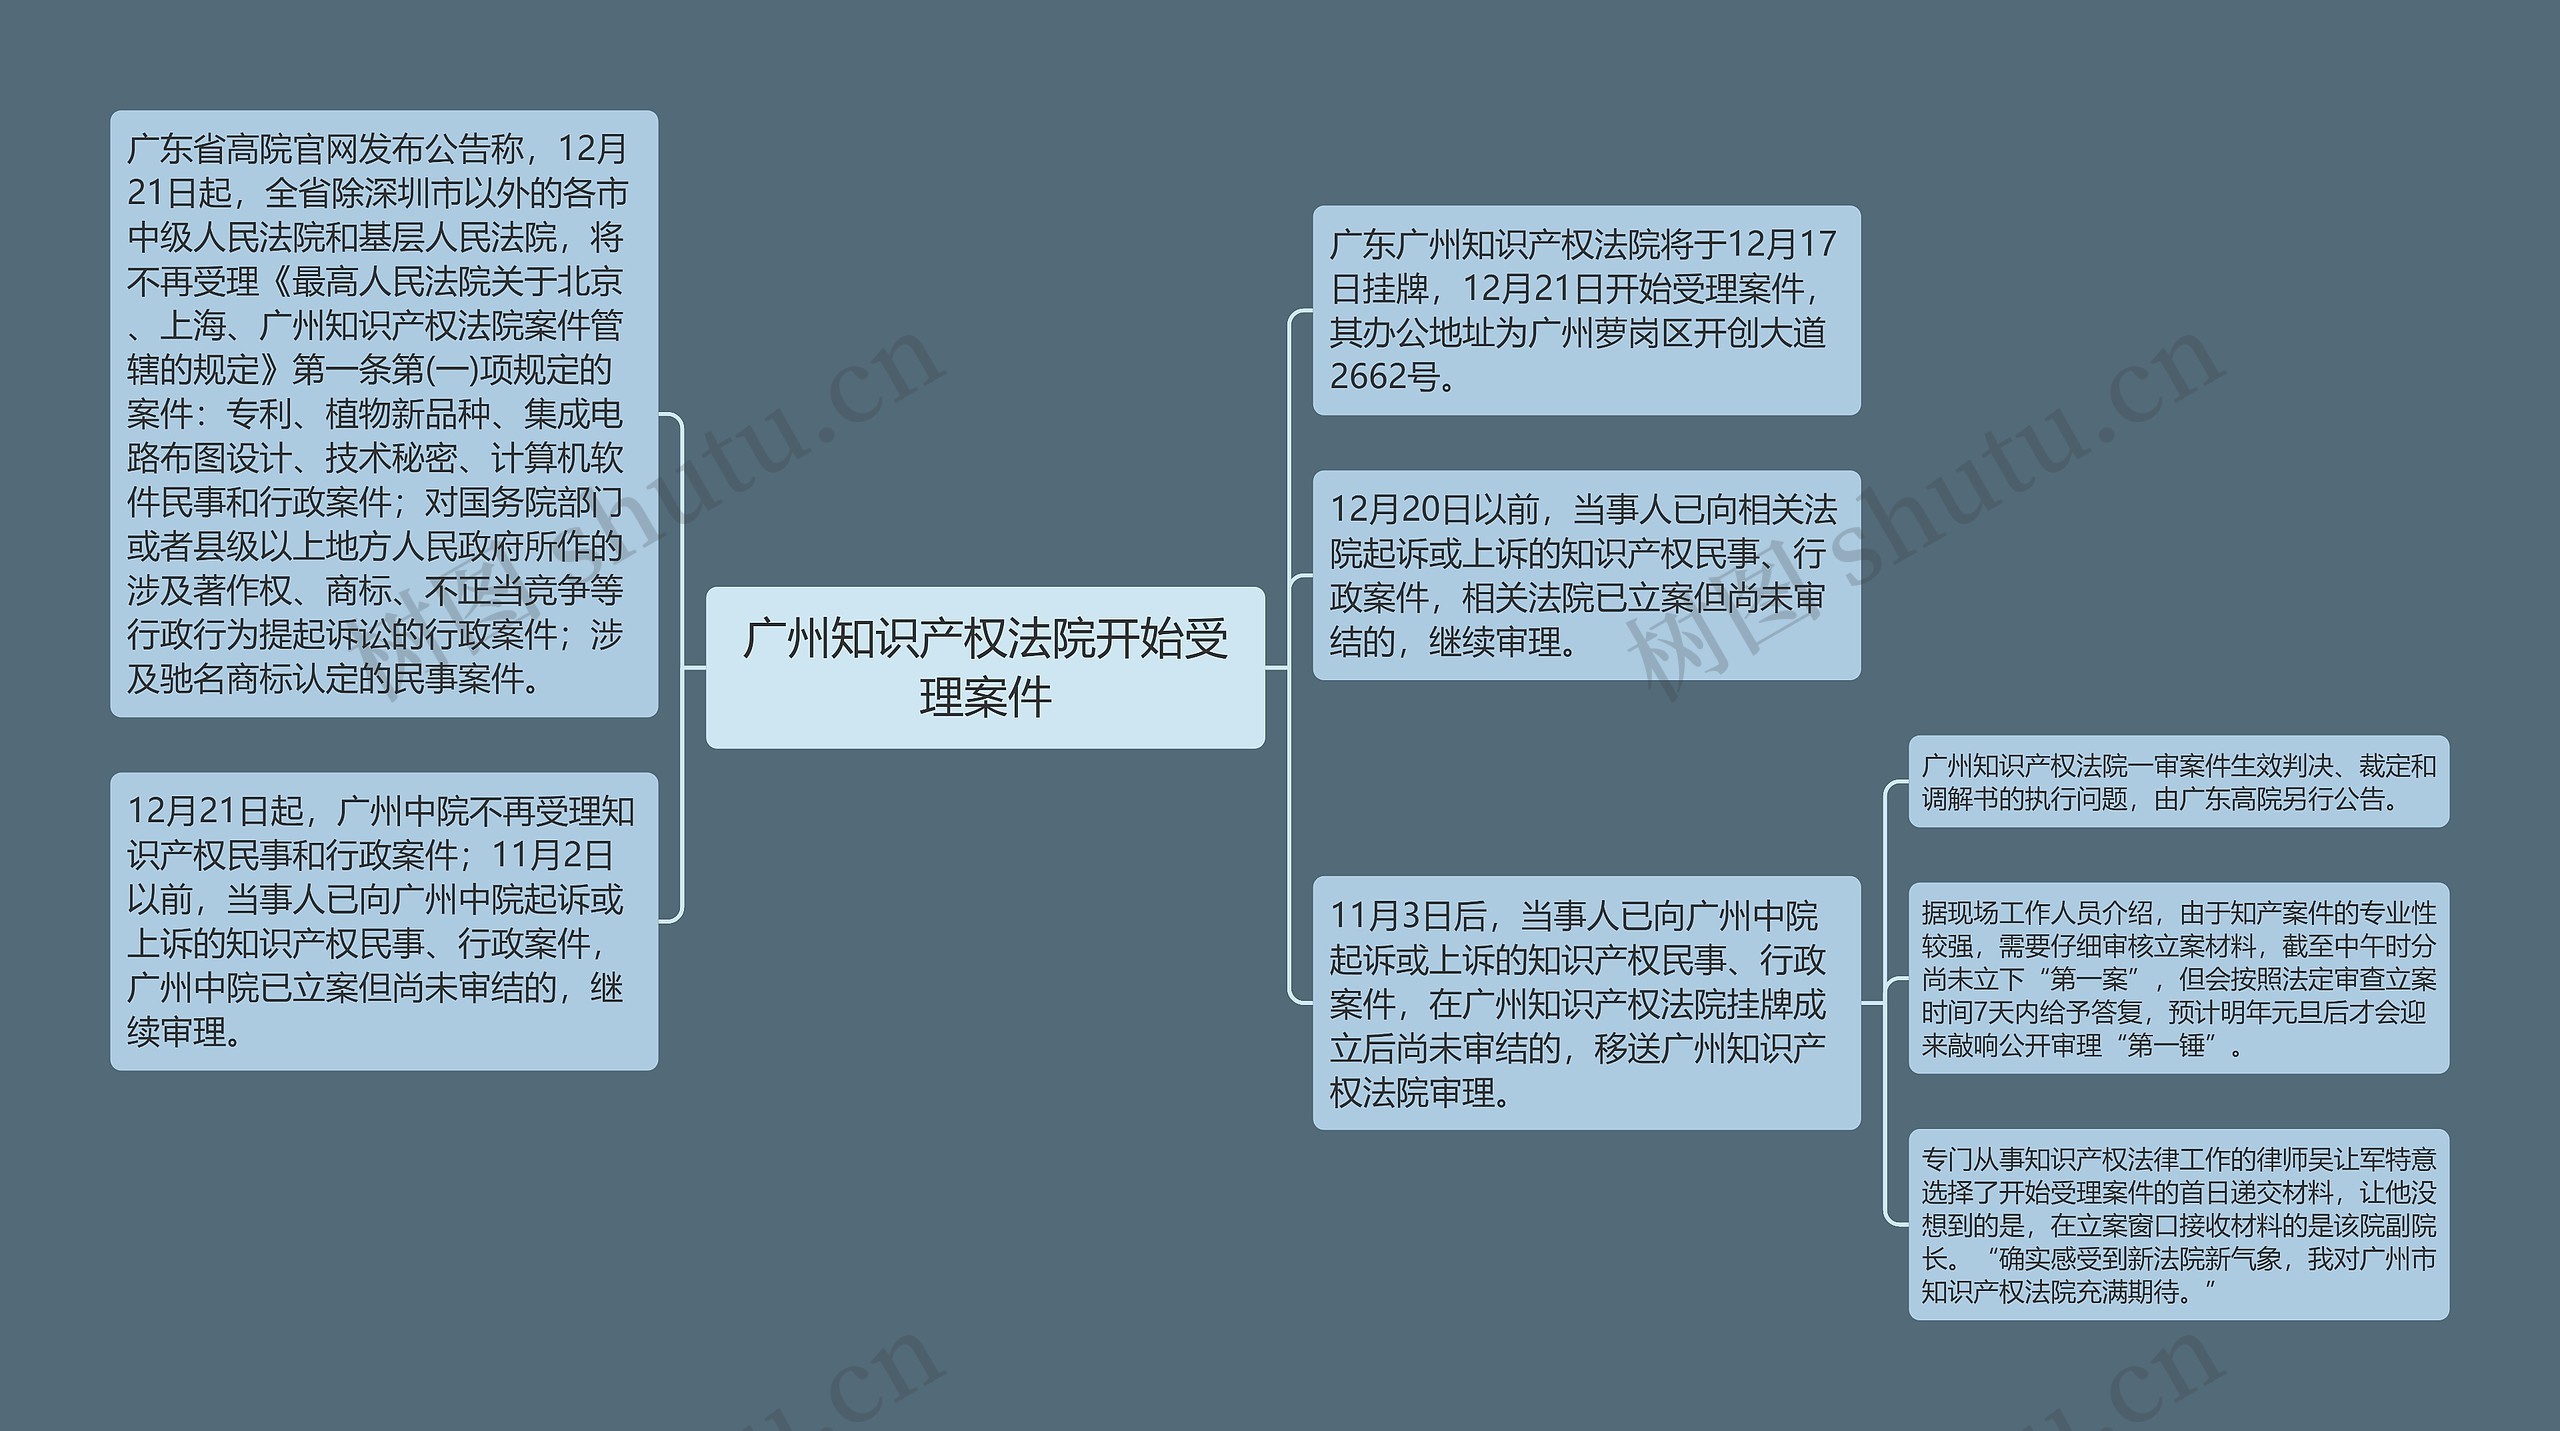 广州知识产权法院开始受理案件思维导图